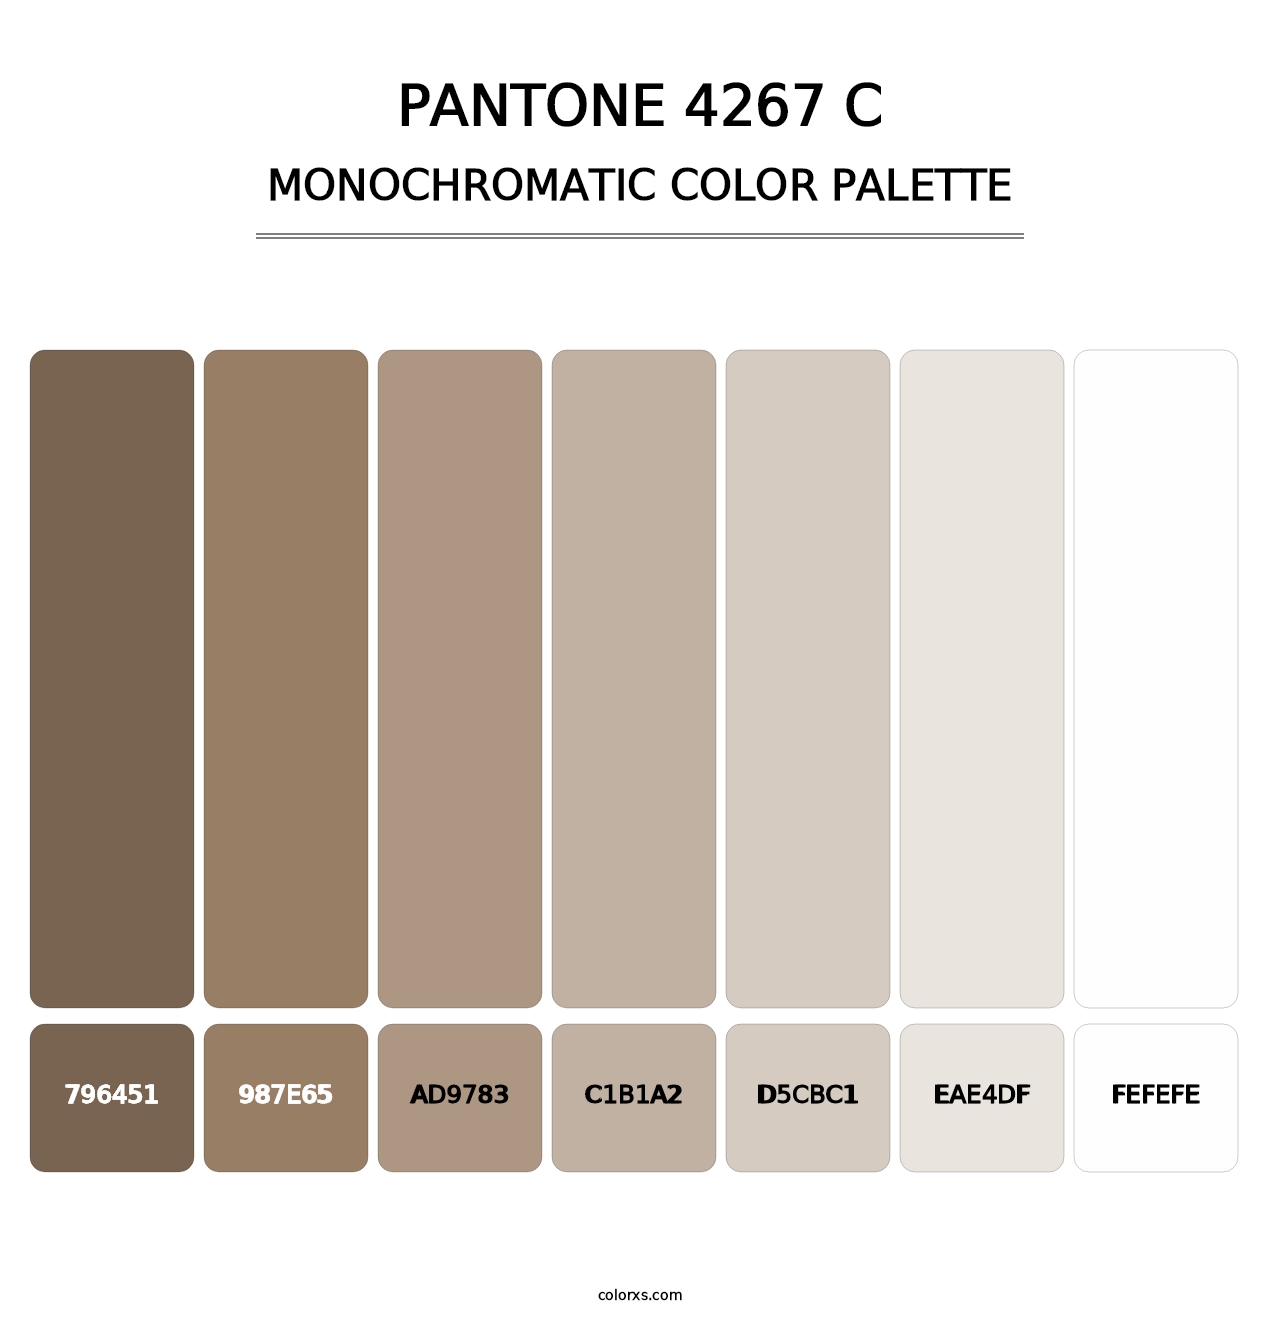 PANTONE 4267 C - Monochromatic Color Palette